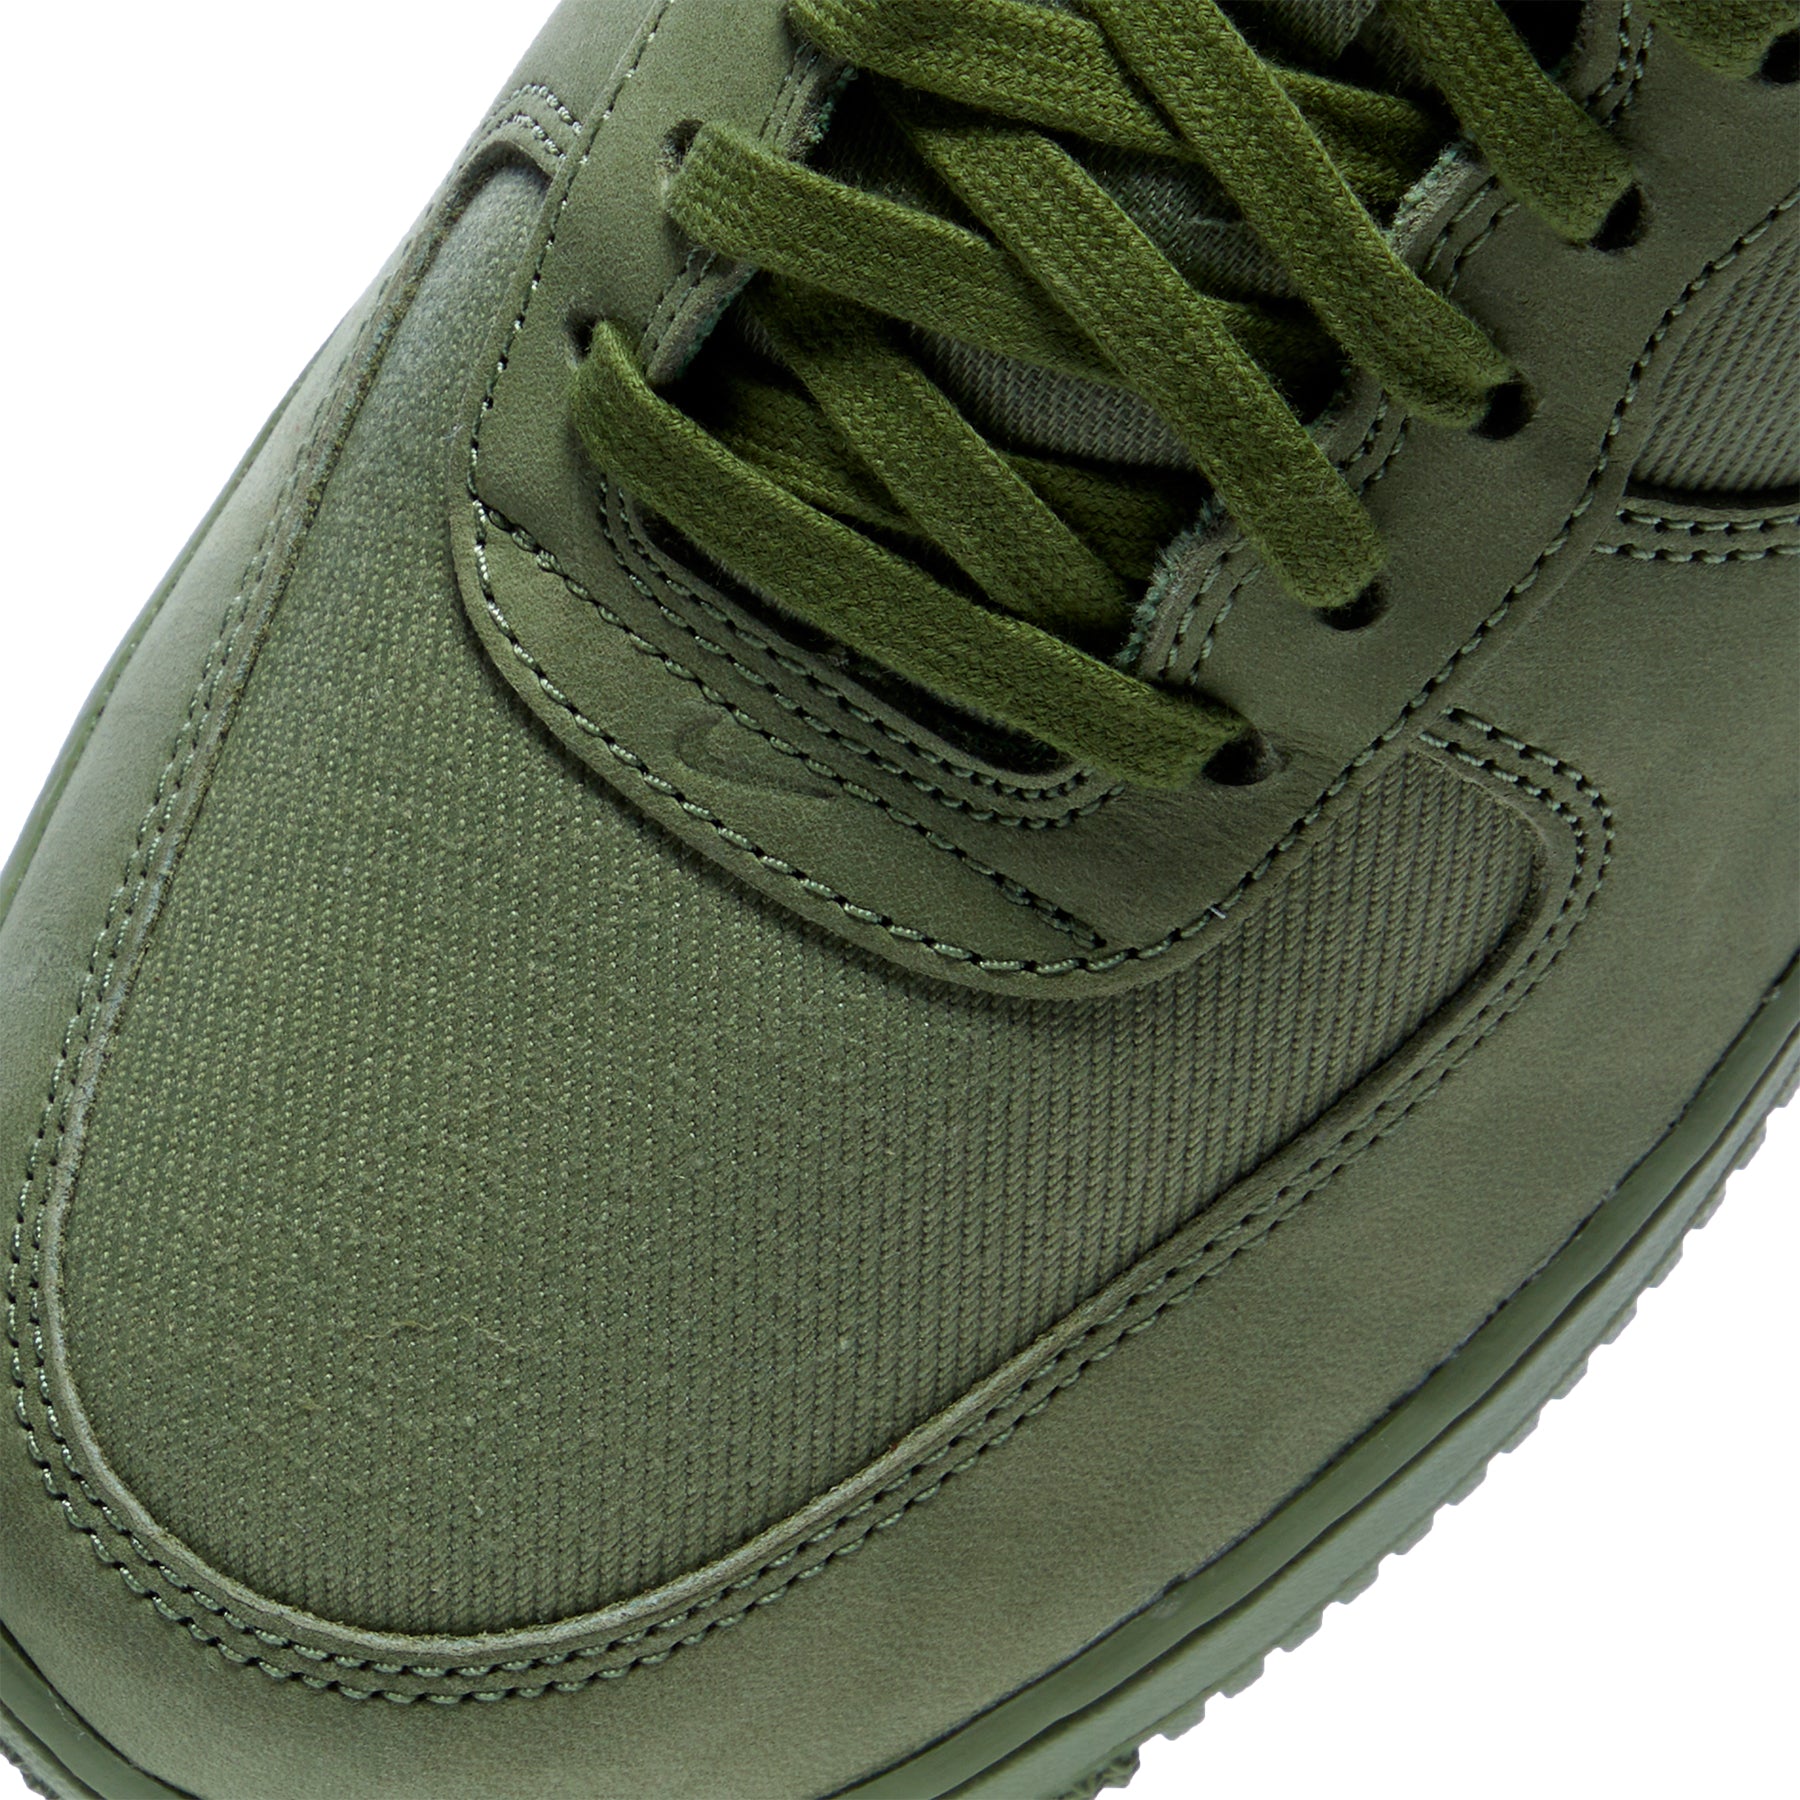 Nike Air Force 1 Low PRM Oil Green FB8876-300